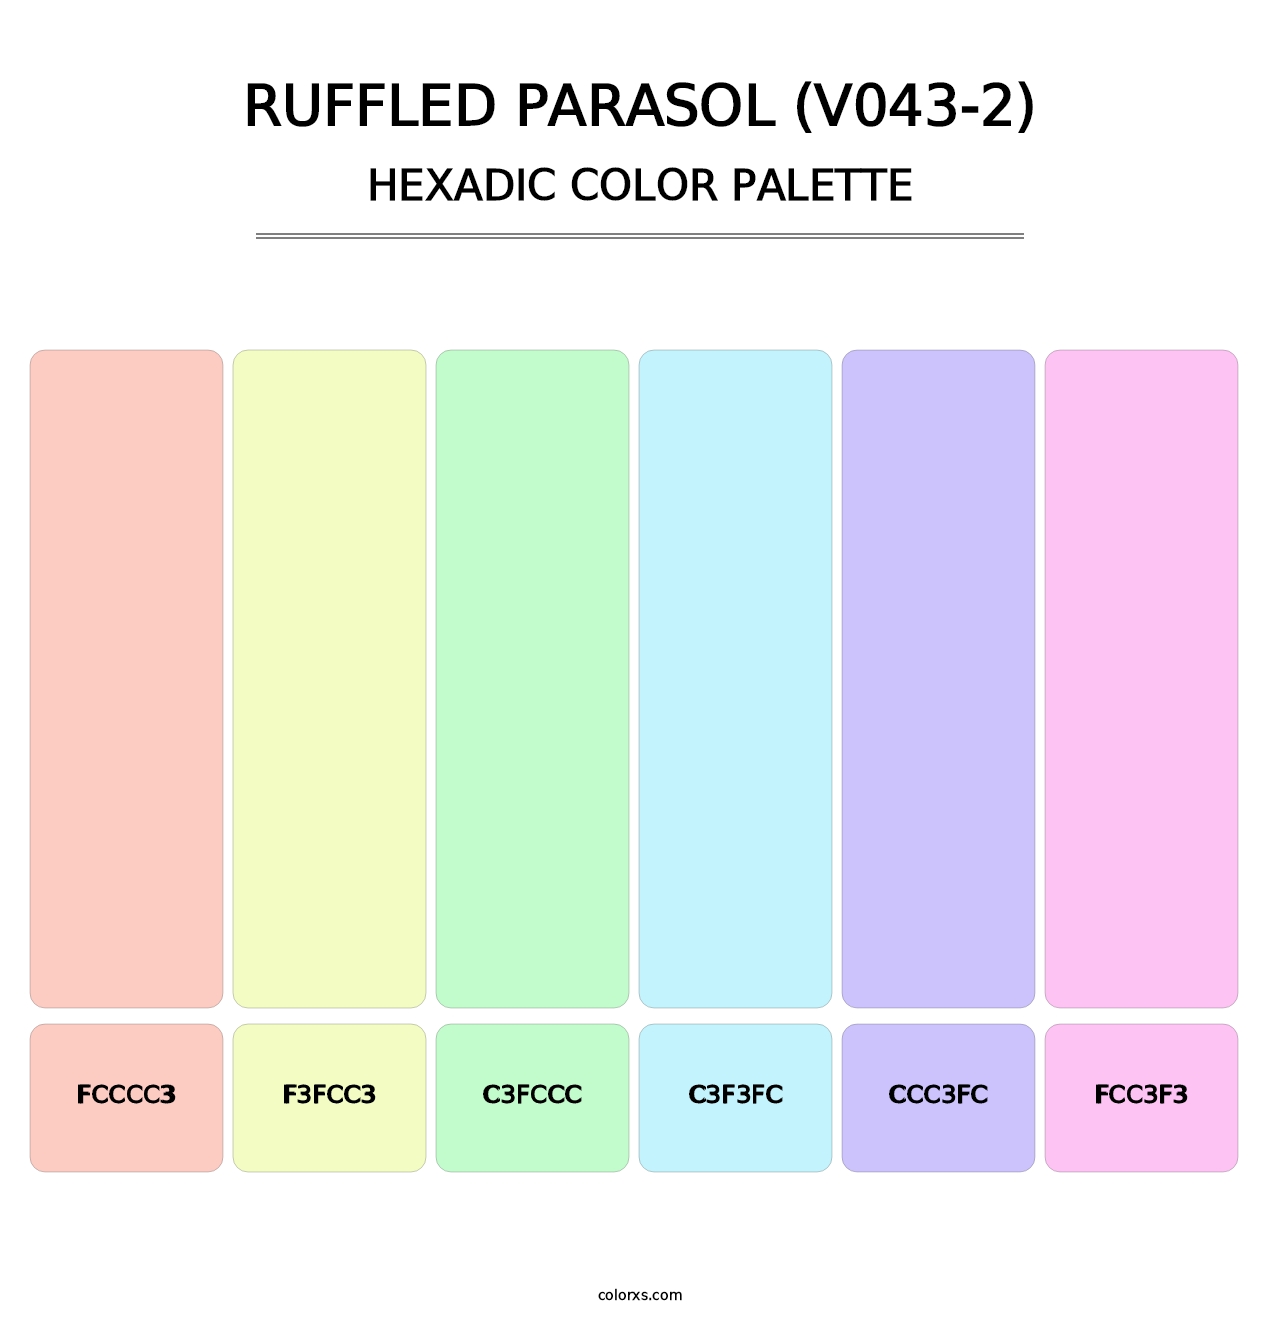 Ruffled Parasol (V043-2) - Hexadic Color Palette